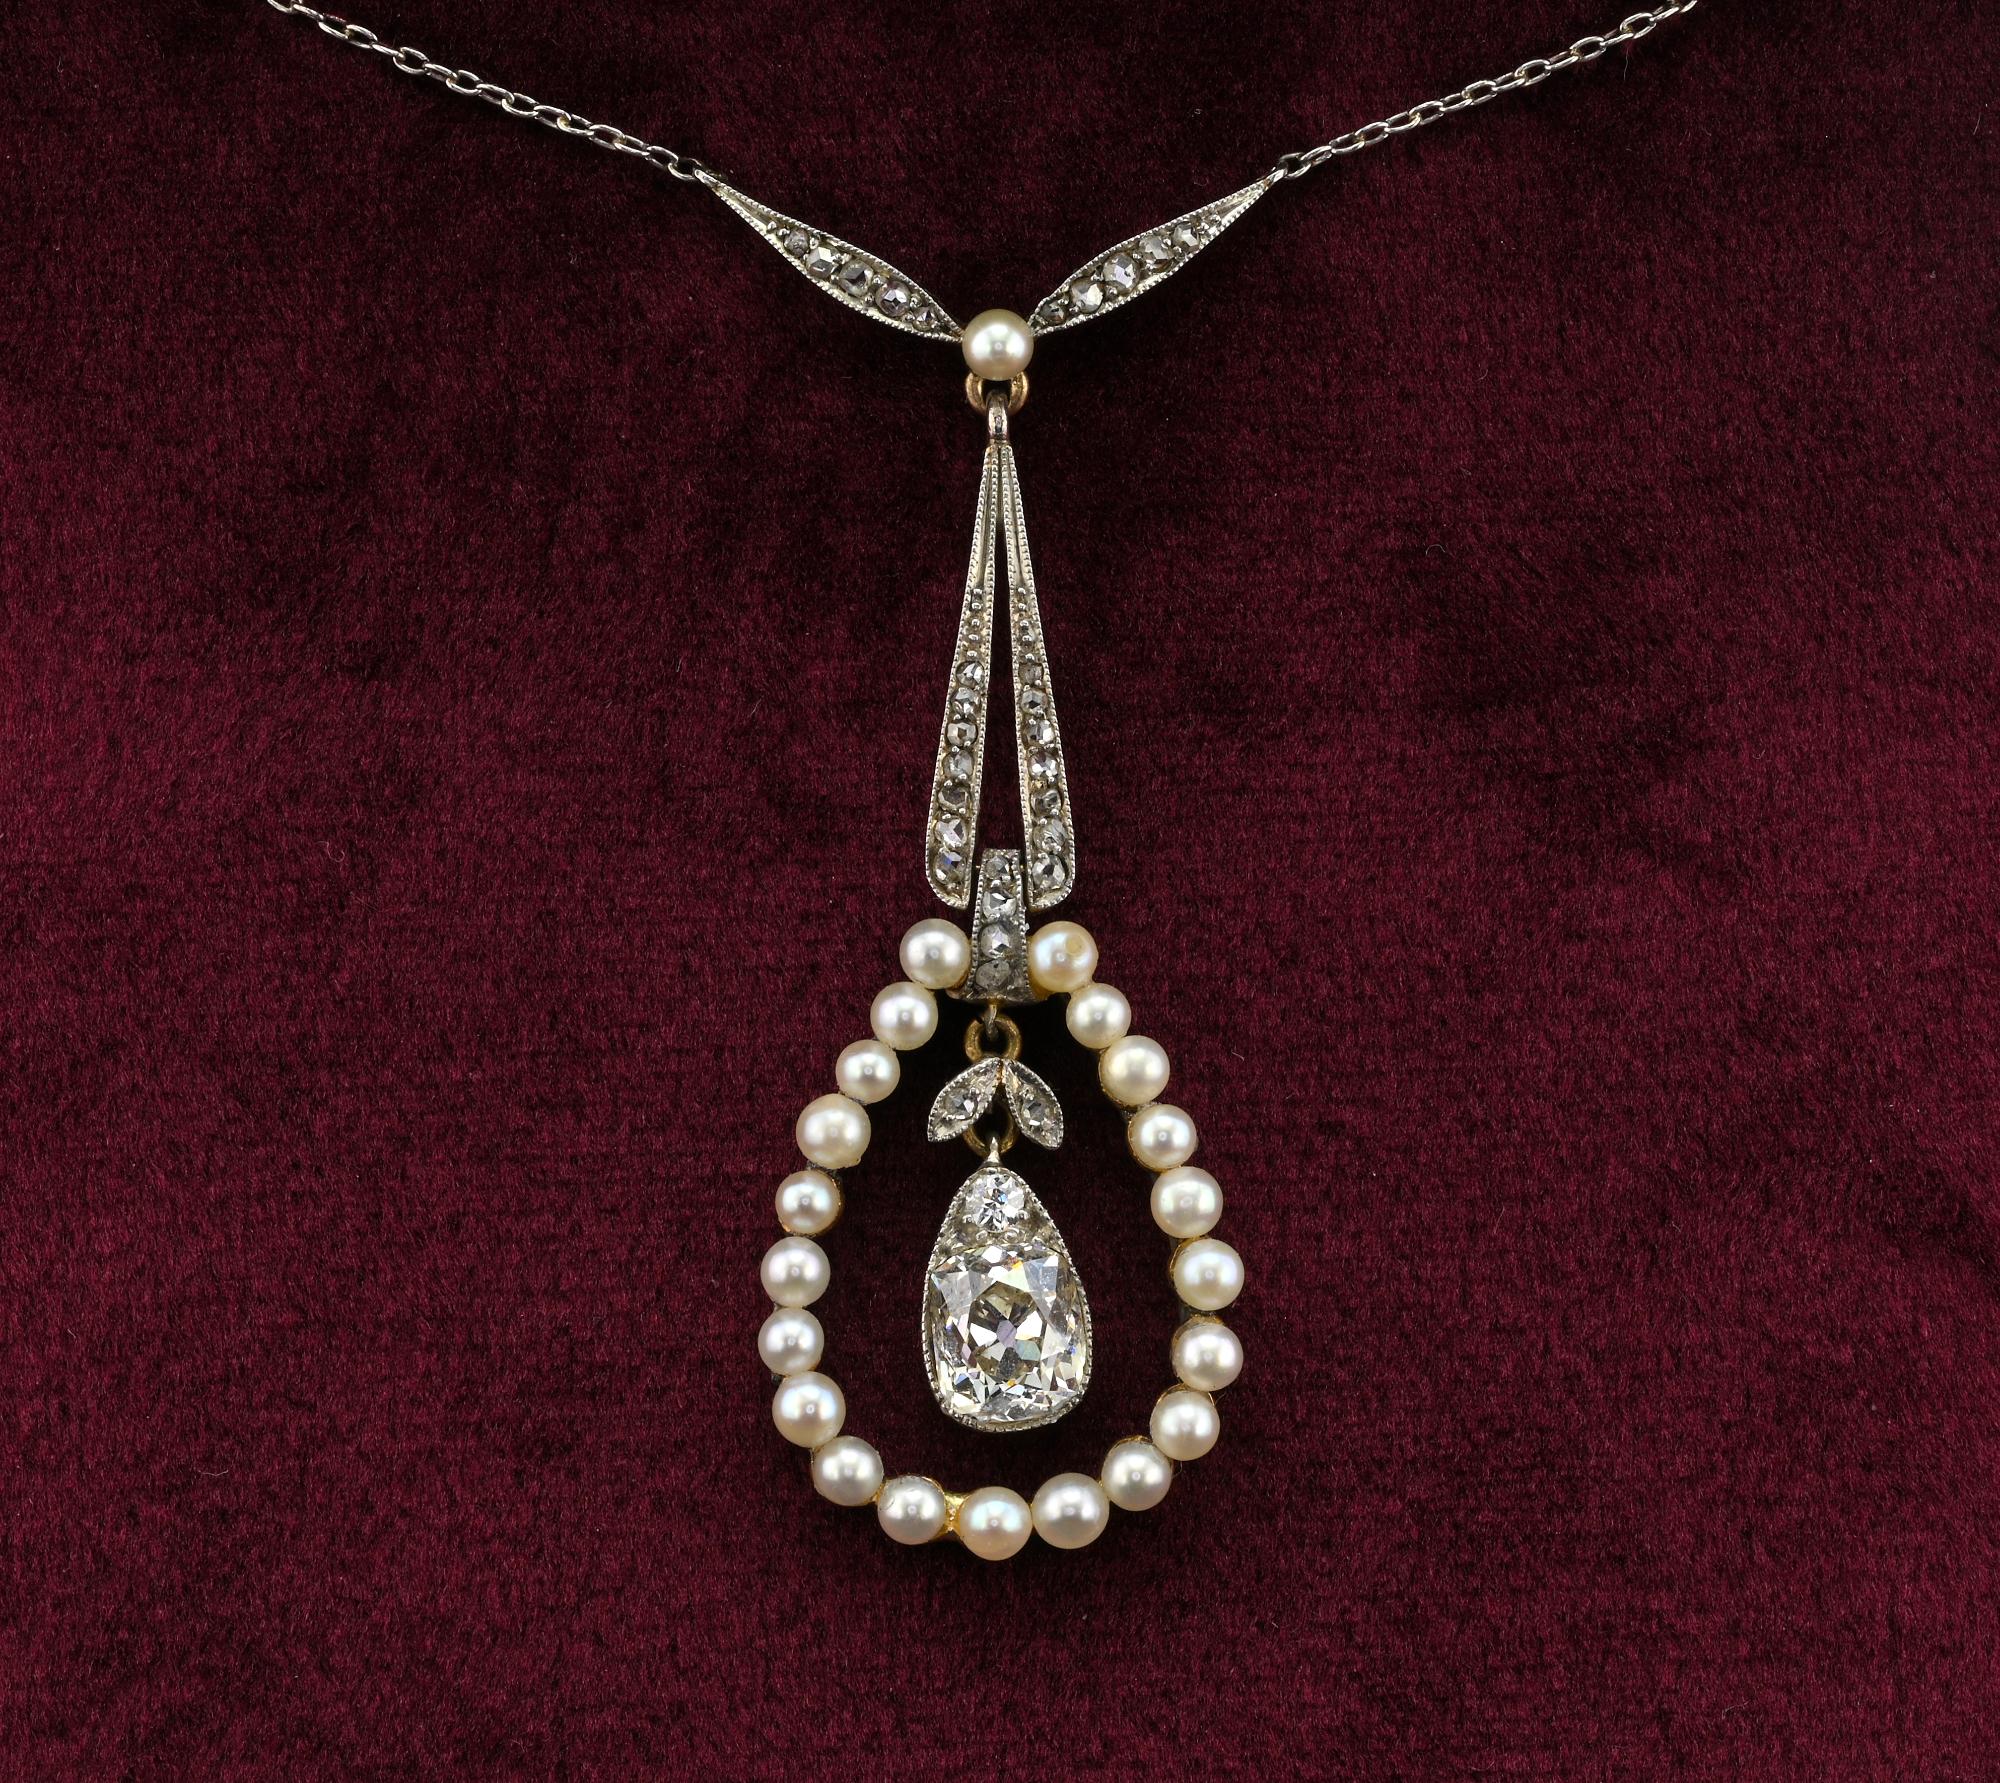 Edwardianische Periode 1900 CIRCA Halskette, aus Platin und 18 kt Gold gefertigt
Das Design ist von unendlicher Eleganz und Anmut. An einer Platin-Kette hängt ein Tropfen aus natürlichen Mikroperlen, der einen Diamanten mit Kissenschliff in der